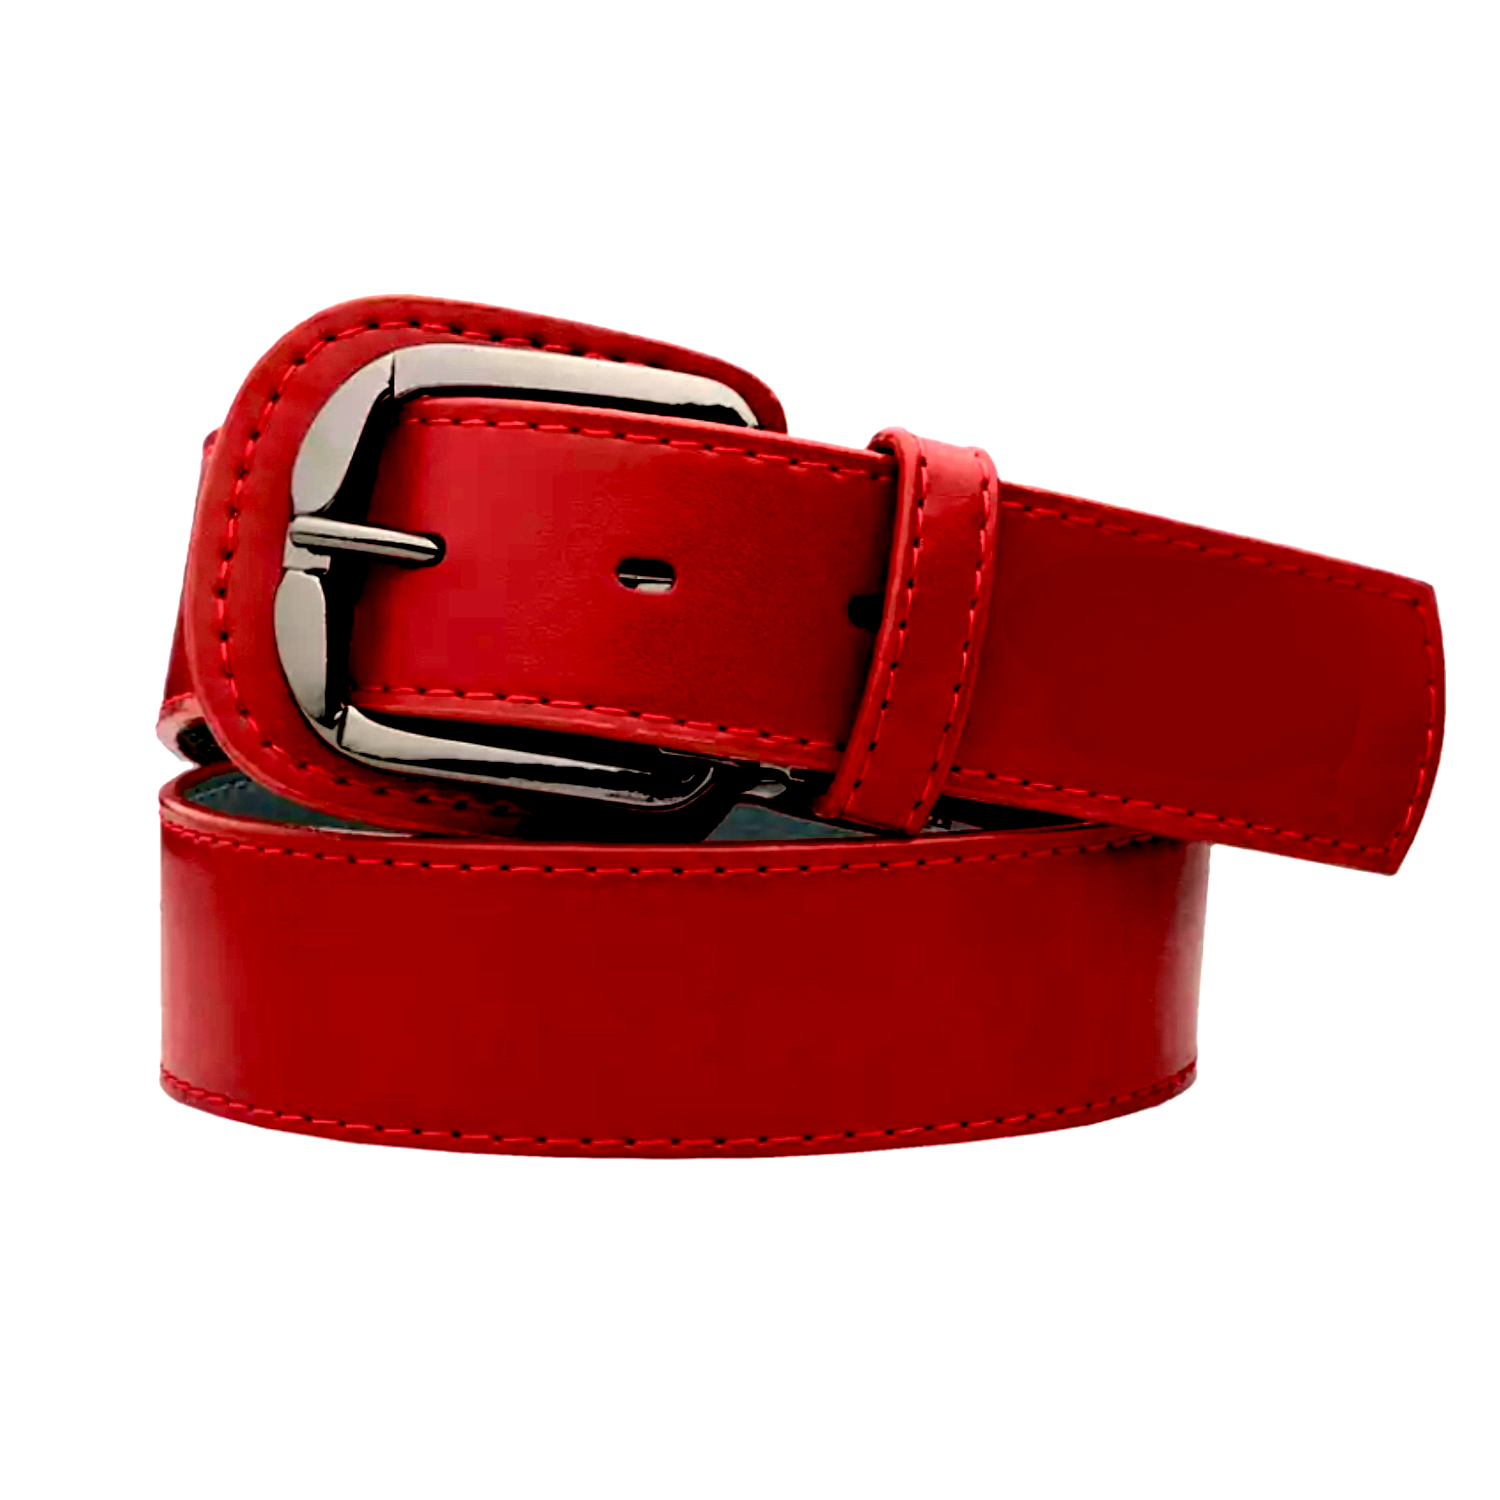 Standard Cardinal Baller Leather Belt